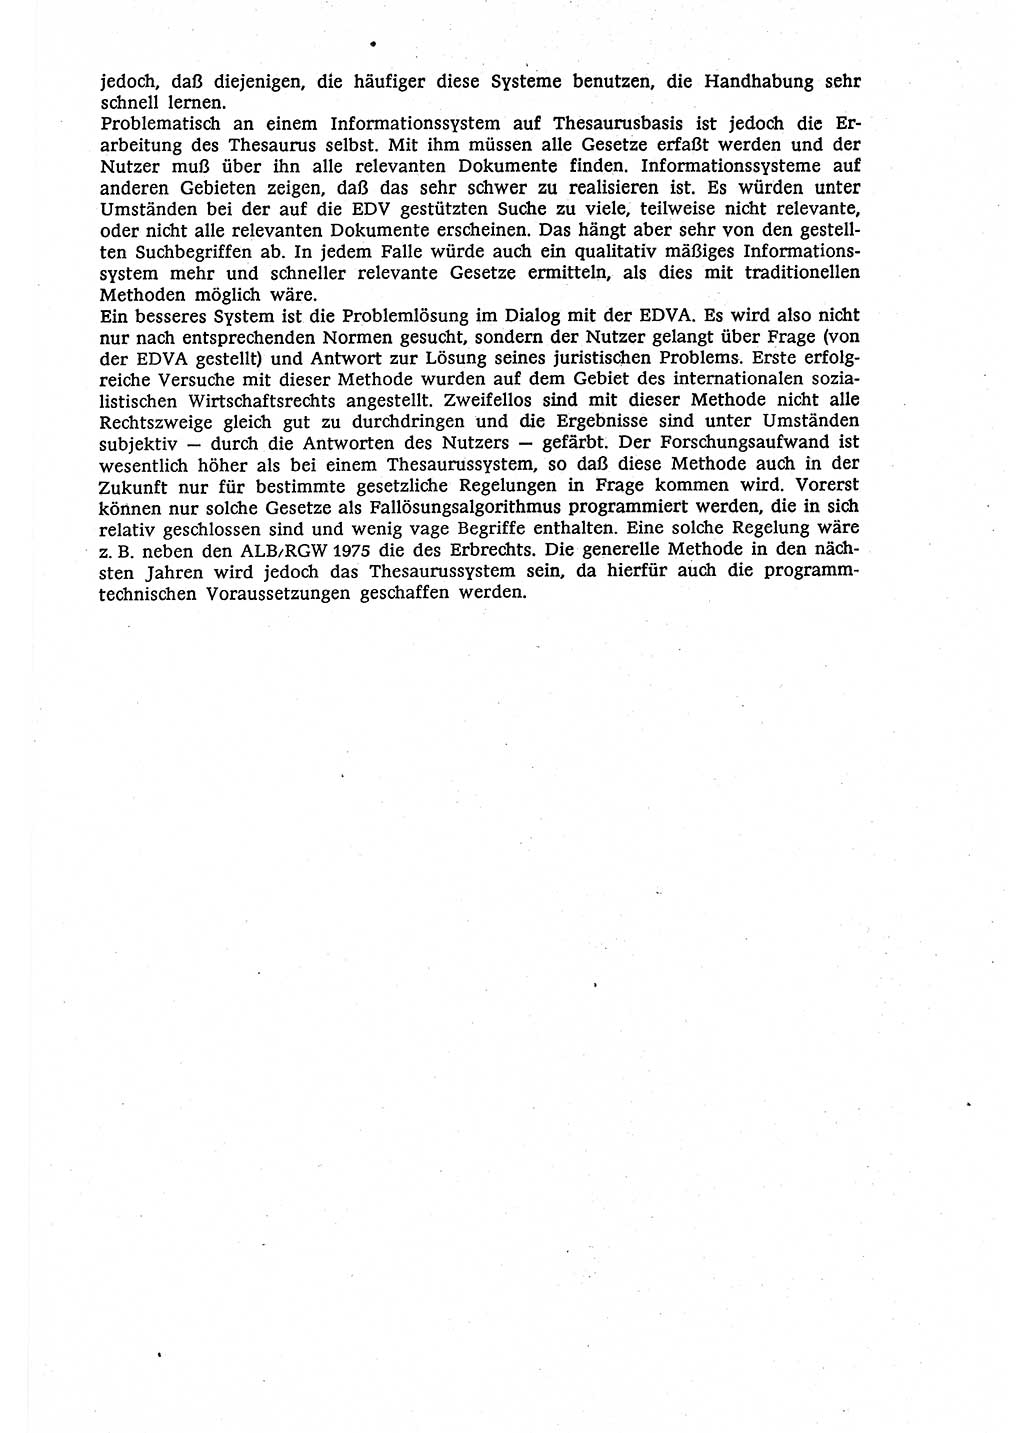 Marxistisch-leninistische (ML) Staats- und Rechtstheorie [Deutsche Demokratische Republik (DDR)], Lehrbuch 1980, Seite 559 (ML St.-R.-Th. DDR Lb. 1980, S. 559)